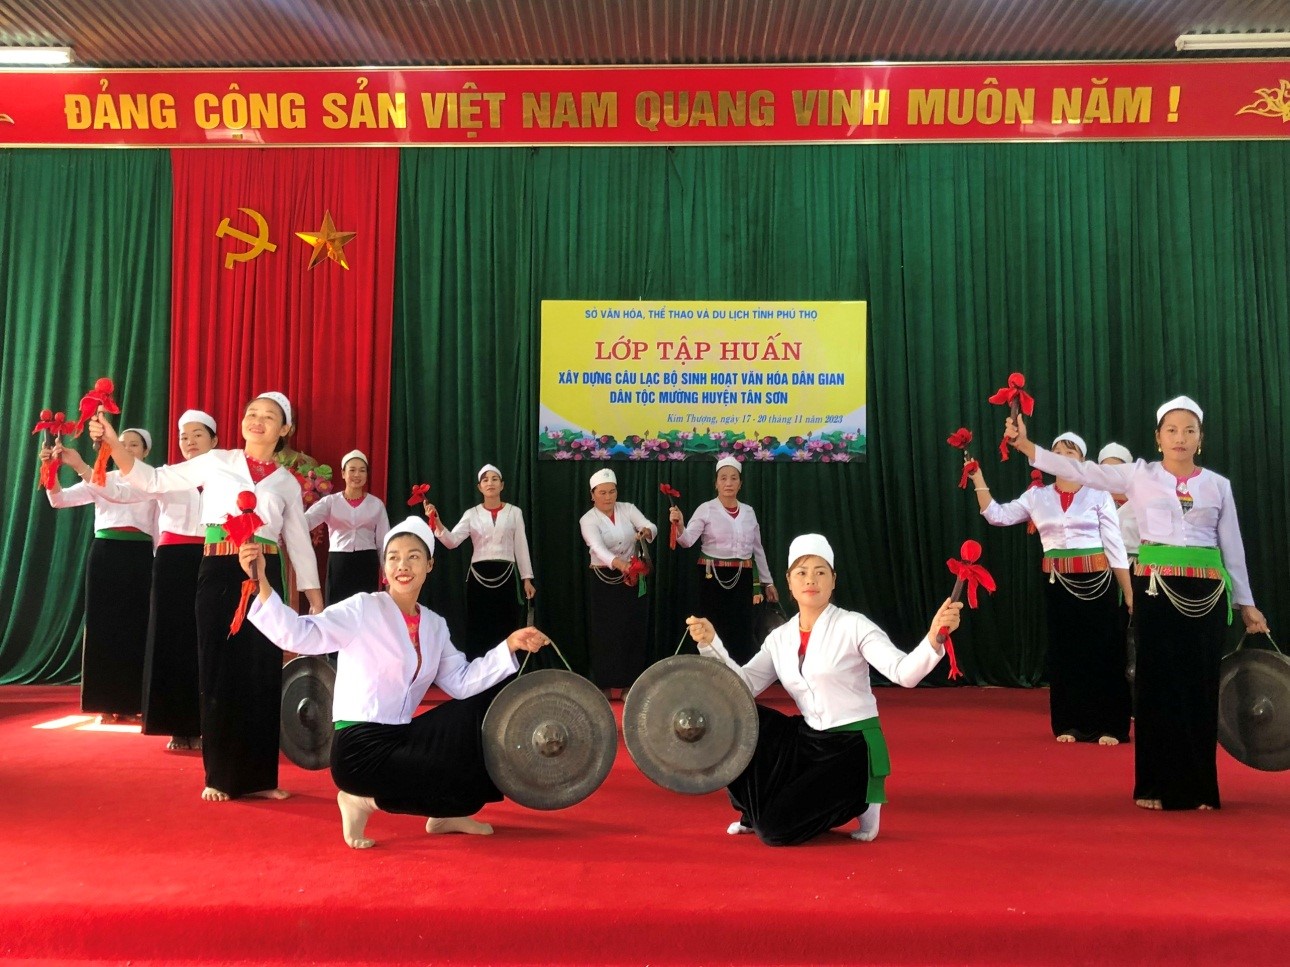 Tổ chức lớp tập huấn xây dựng câu lạc bộ sinh hoạt văn hóa dân gian dân tộc Mường, dân tộc Dao tại huyện Thanh Sơn